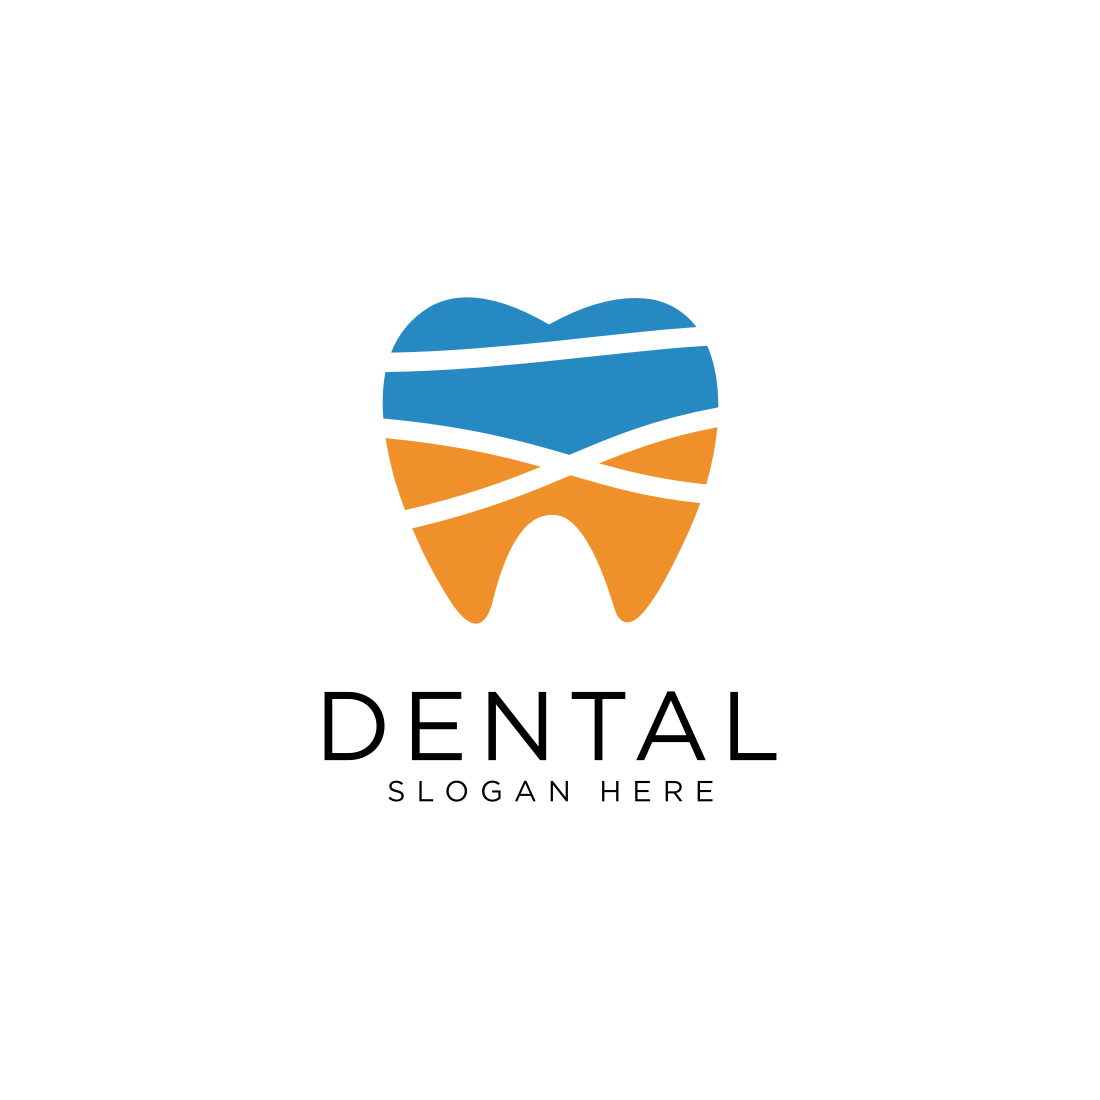 Creative Dental Logo Design Vector main cover